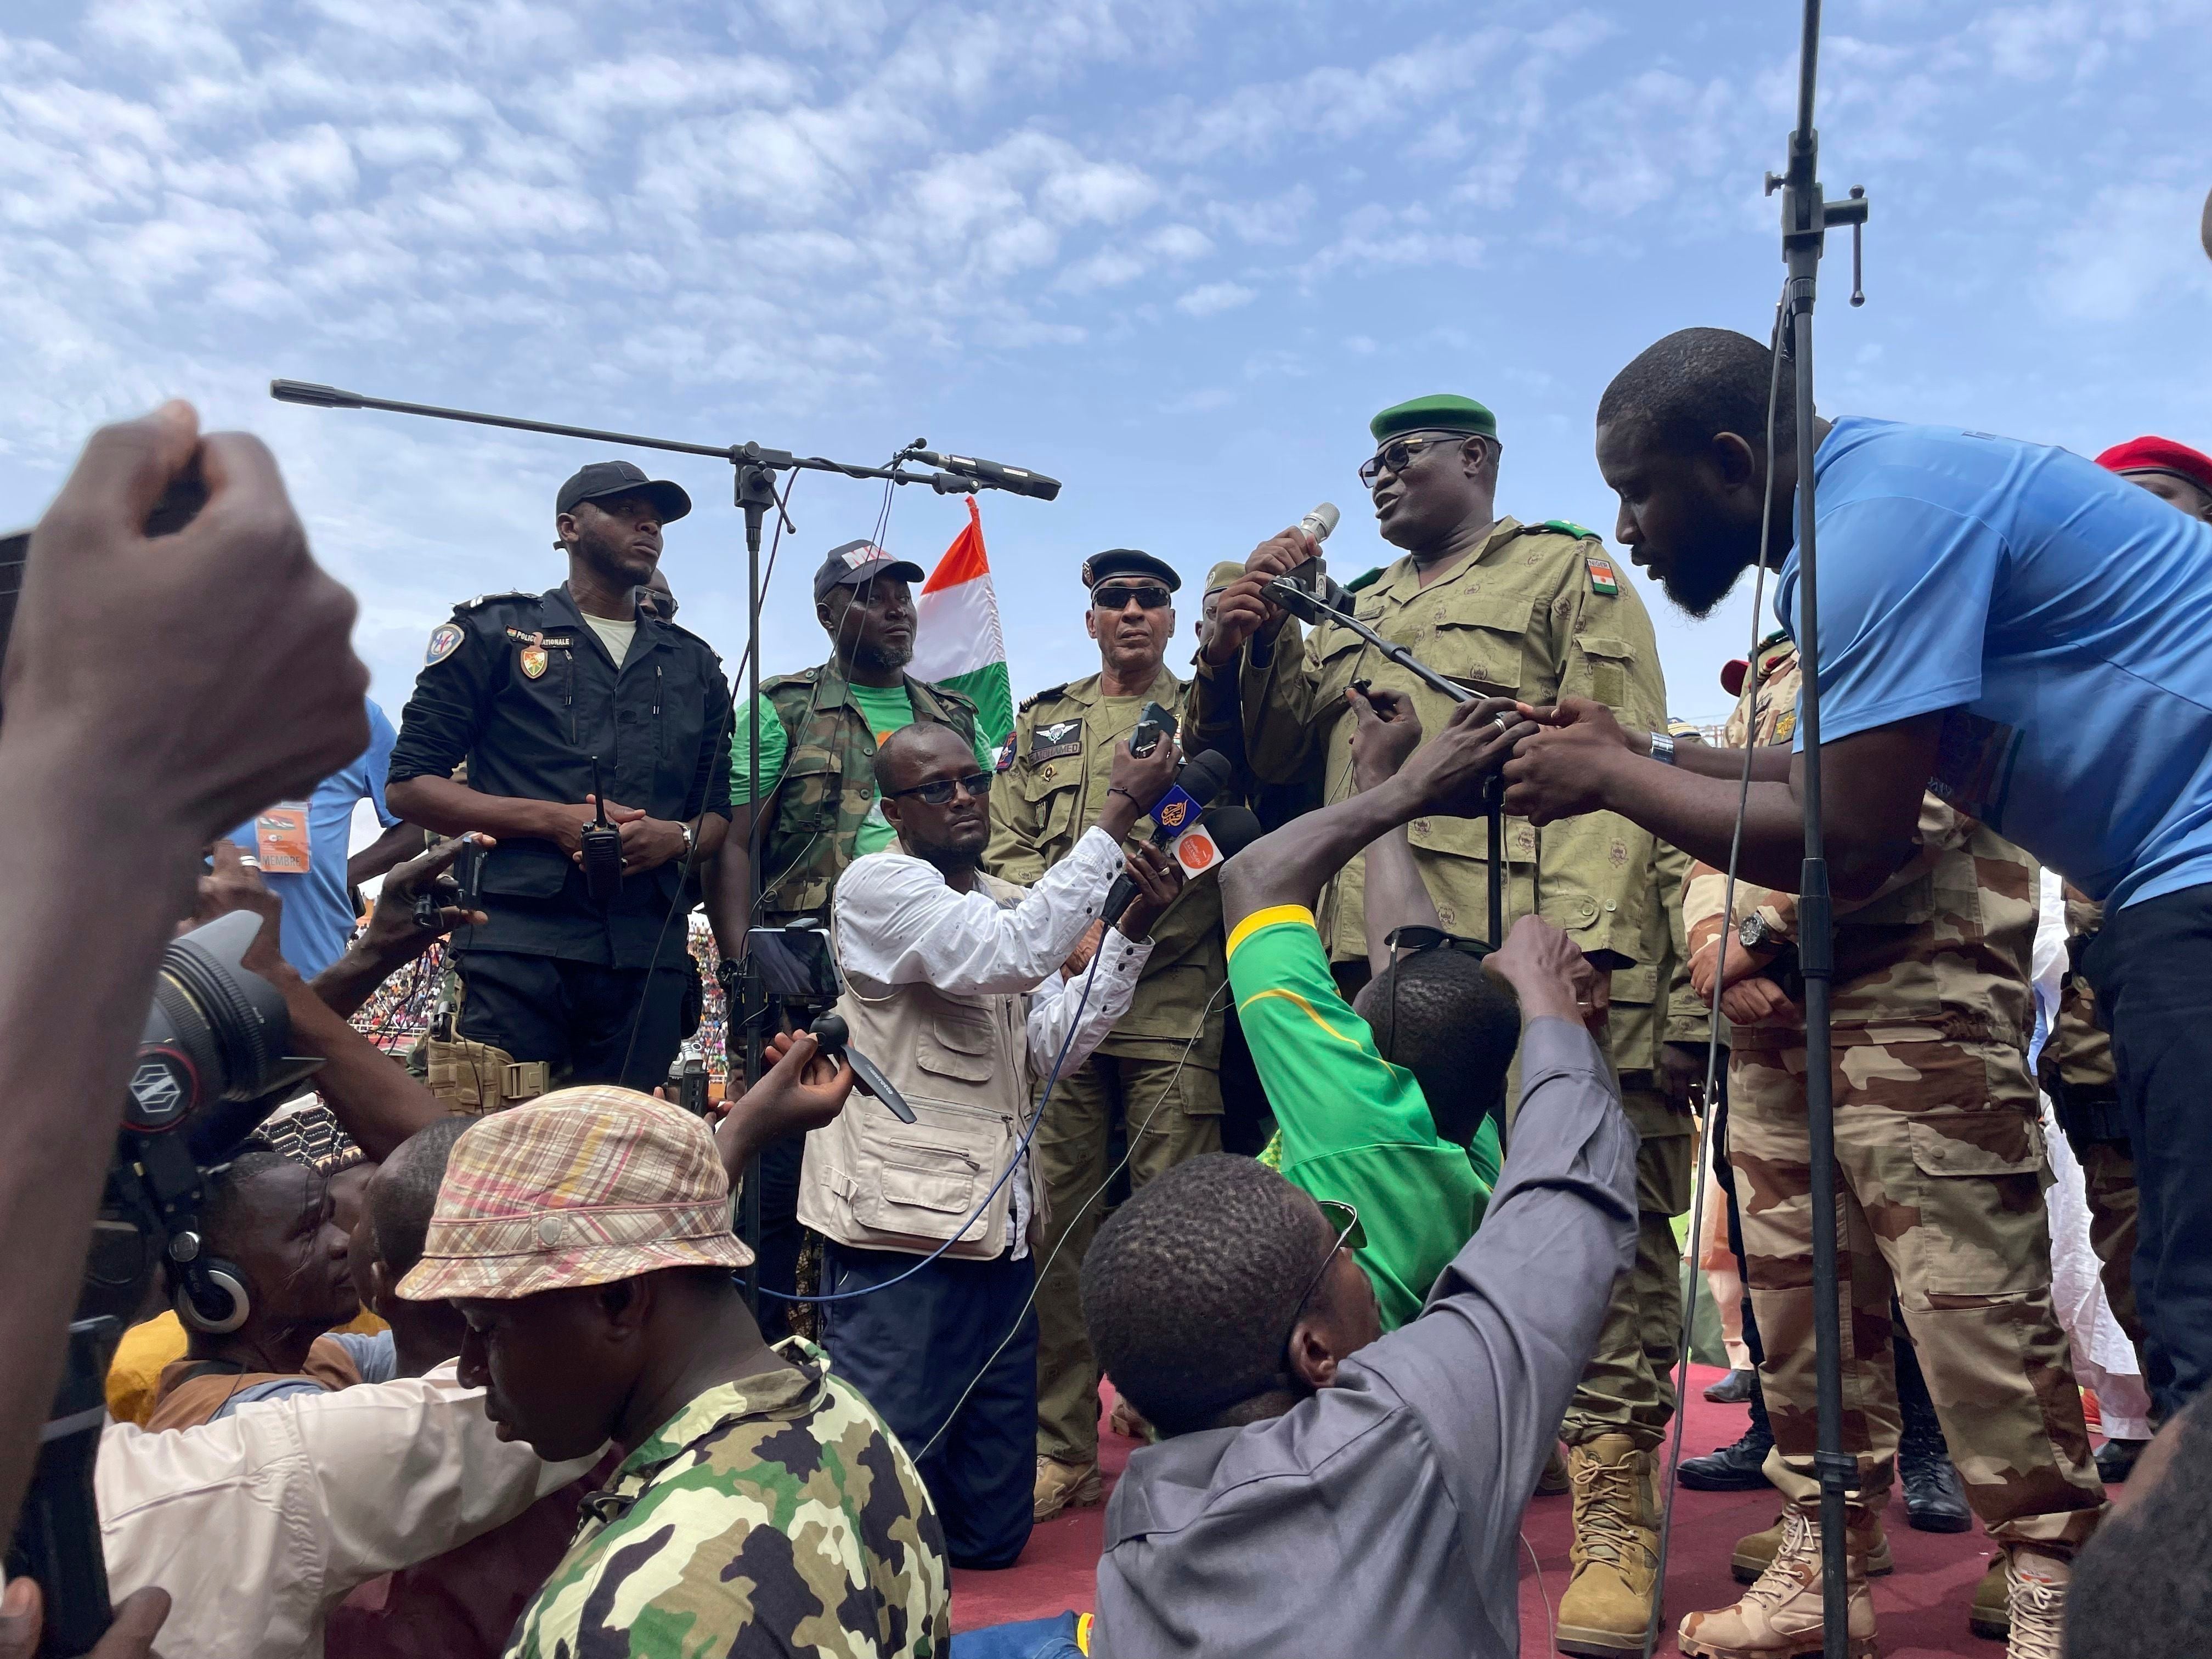 Como respuesta a la advertencia del bloque, los nigerinos afines al gobierno de facto llamaron al reclutamiento masivo de voluntarios para frenar el avance extranjero en el territorio (AP)